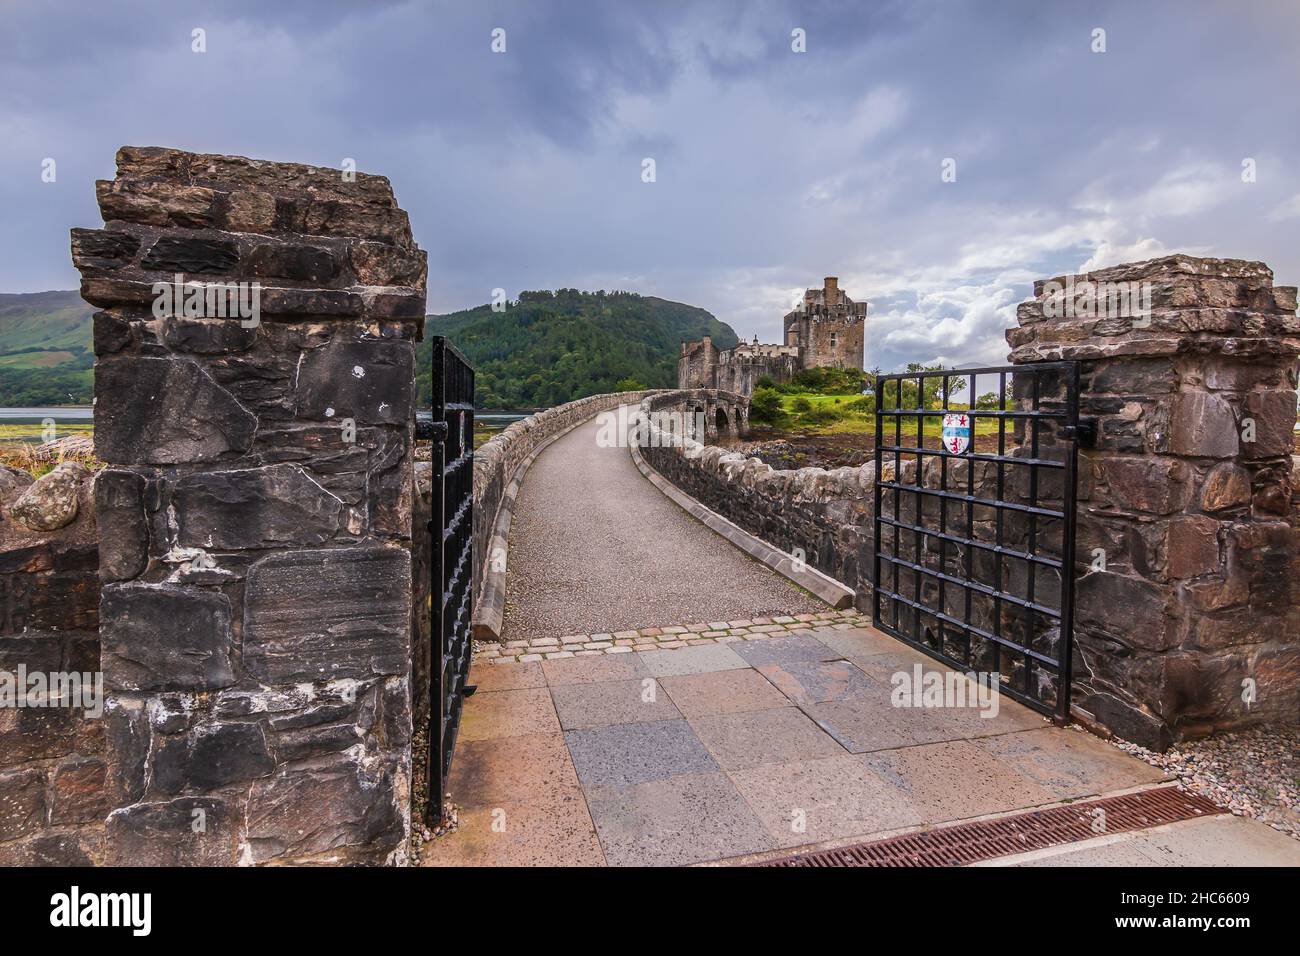 Storico muro di roccia con ingresso a un ponte di pietra. Aperto cancello in acciaio nero del ponte pedonale al Castello di Eilean Donan. Colline con alberi e erba verde Foto Stock